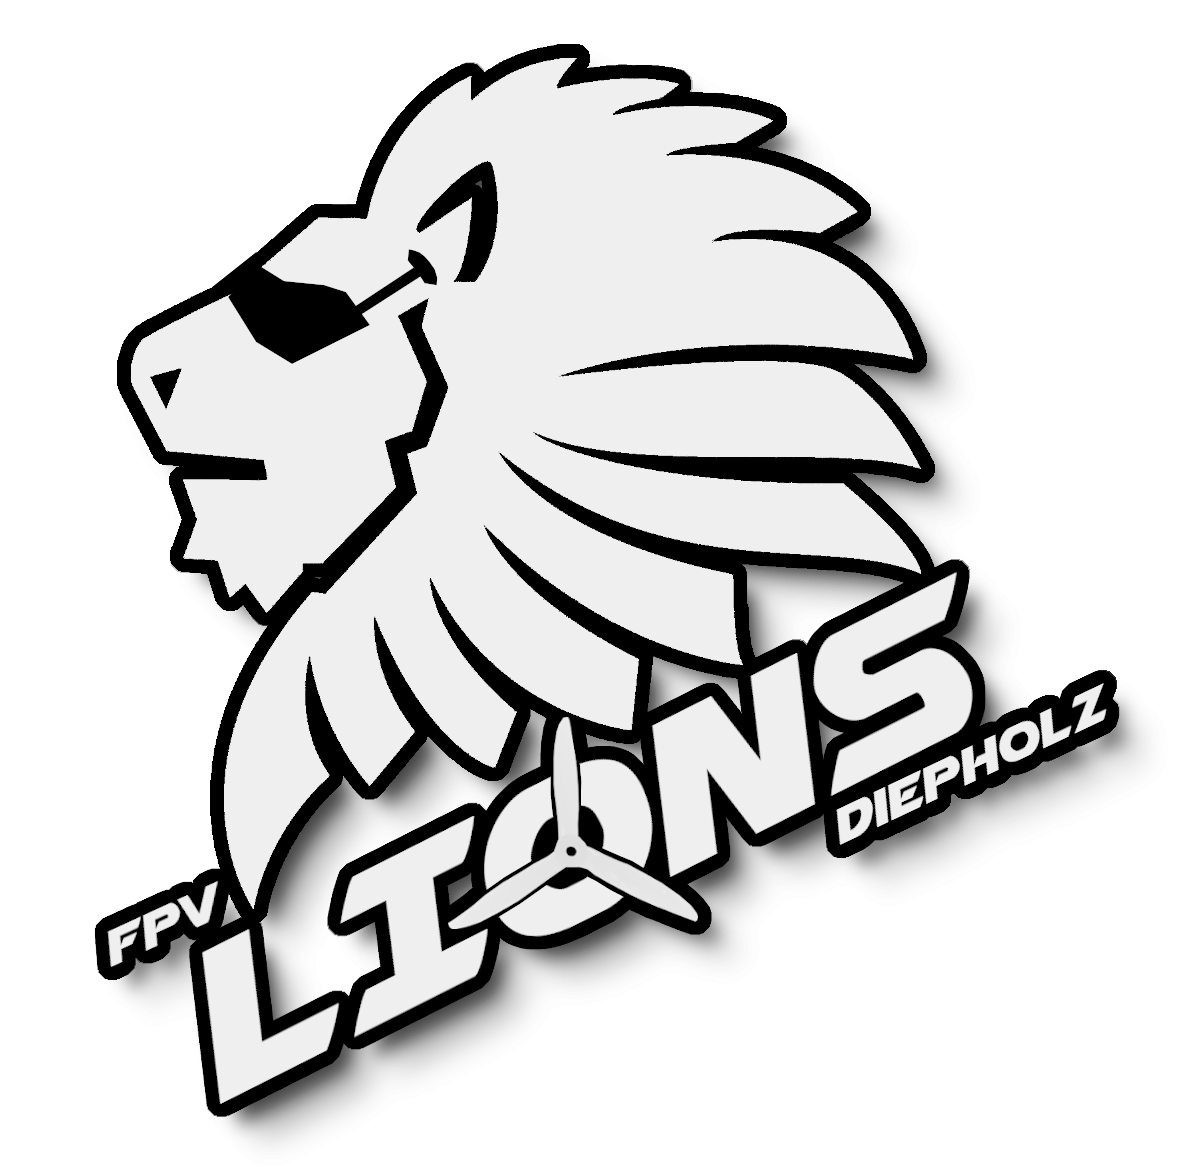 FPV Lions Diepholz